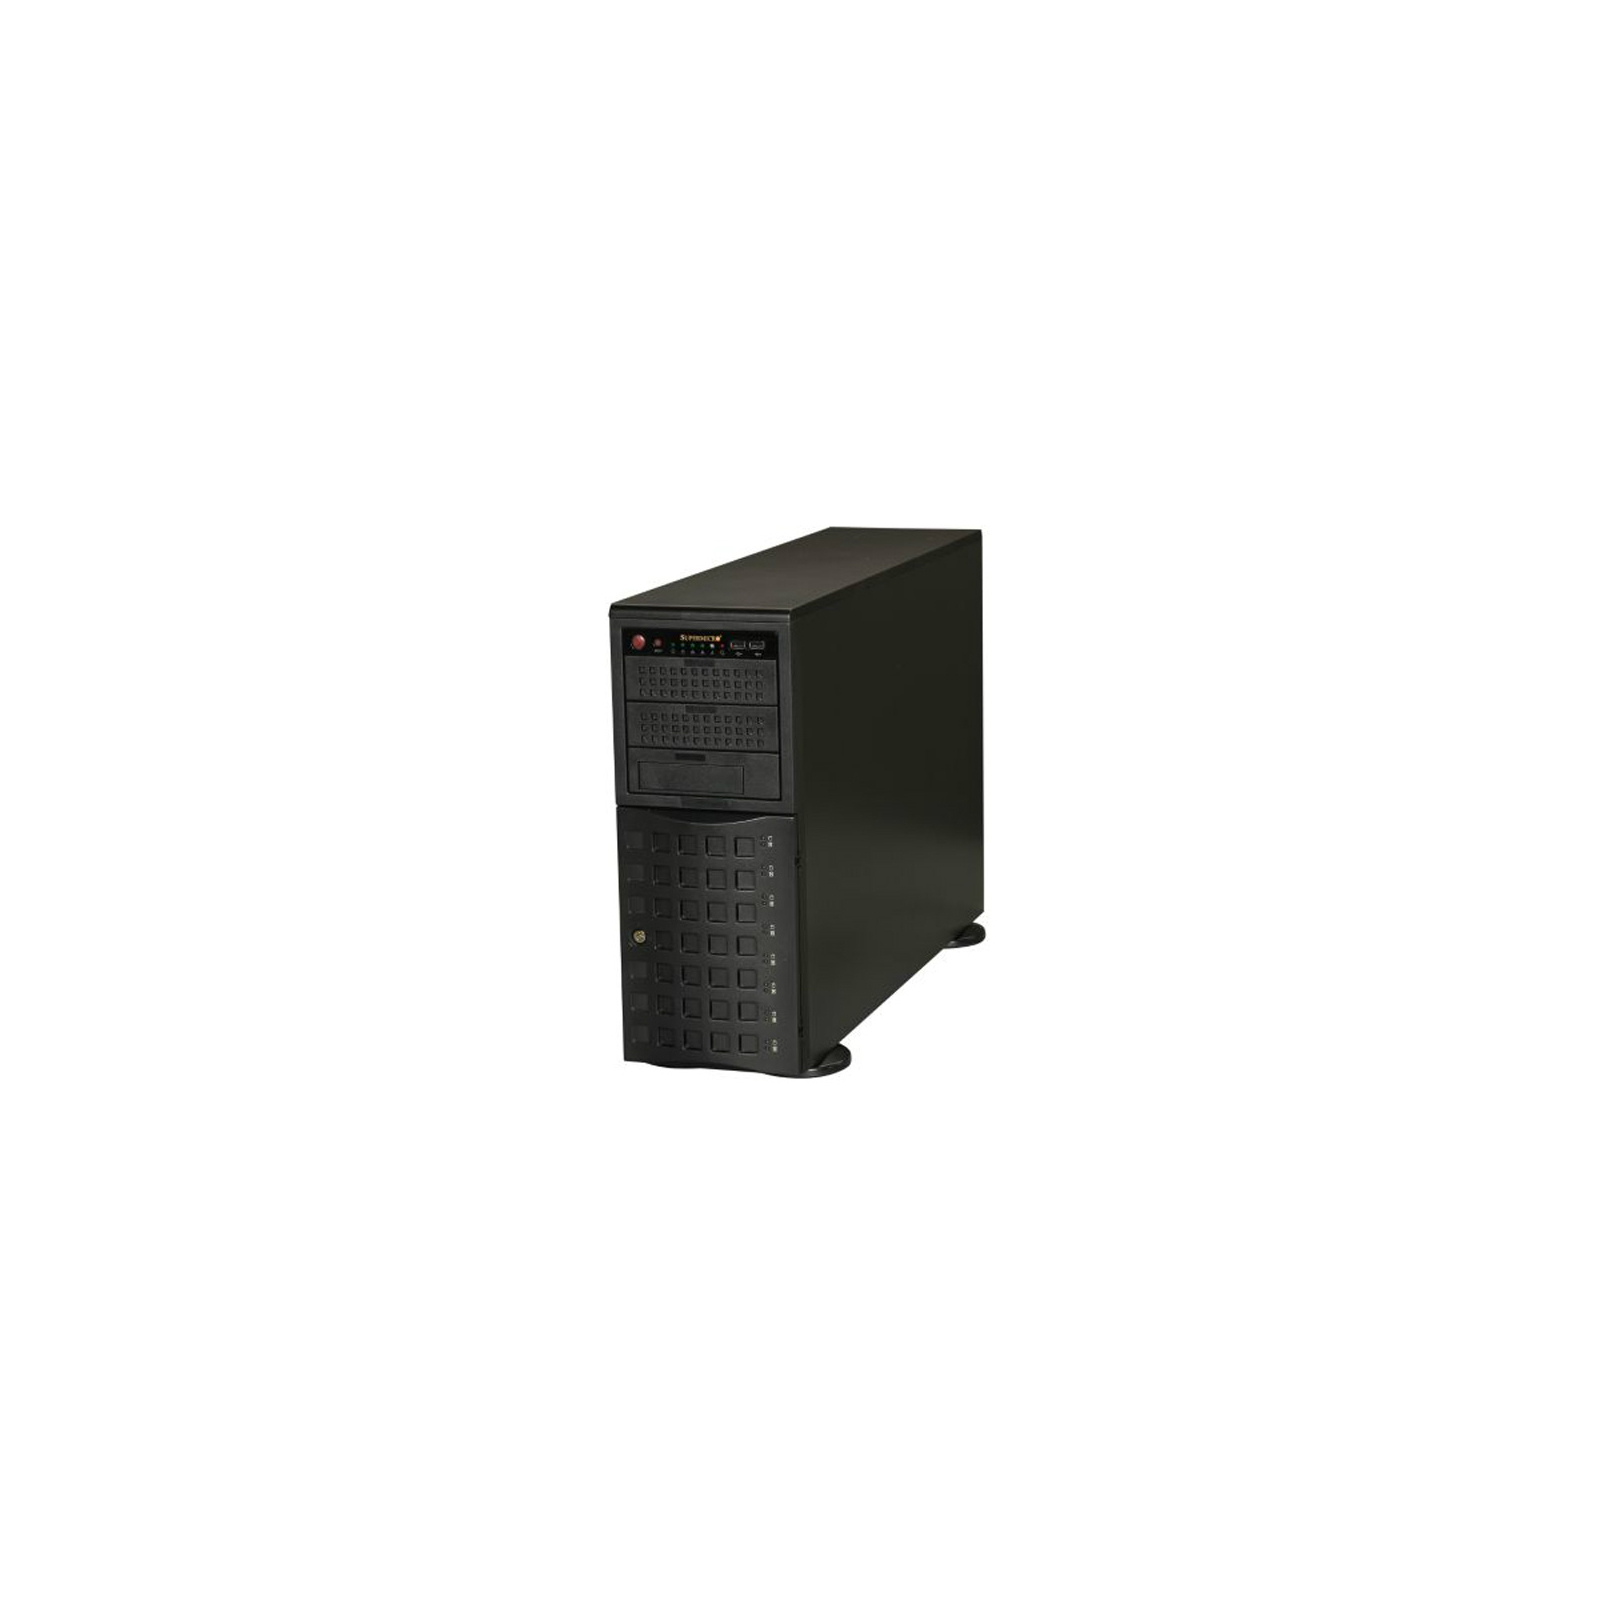 Корпус для сервера Supermicro CSE-745TQ-R920B